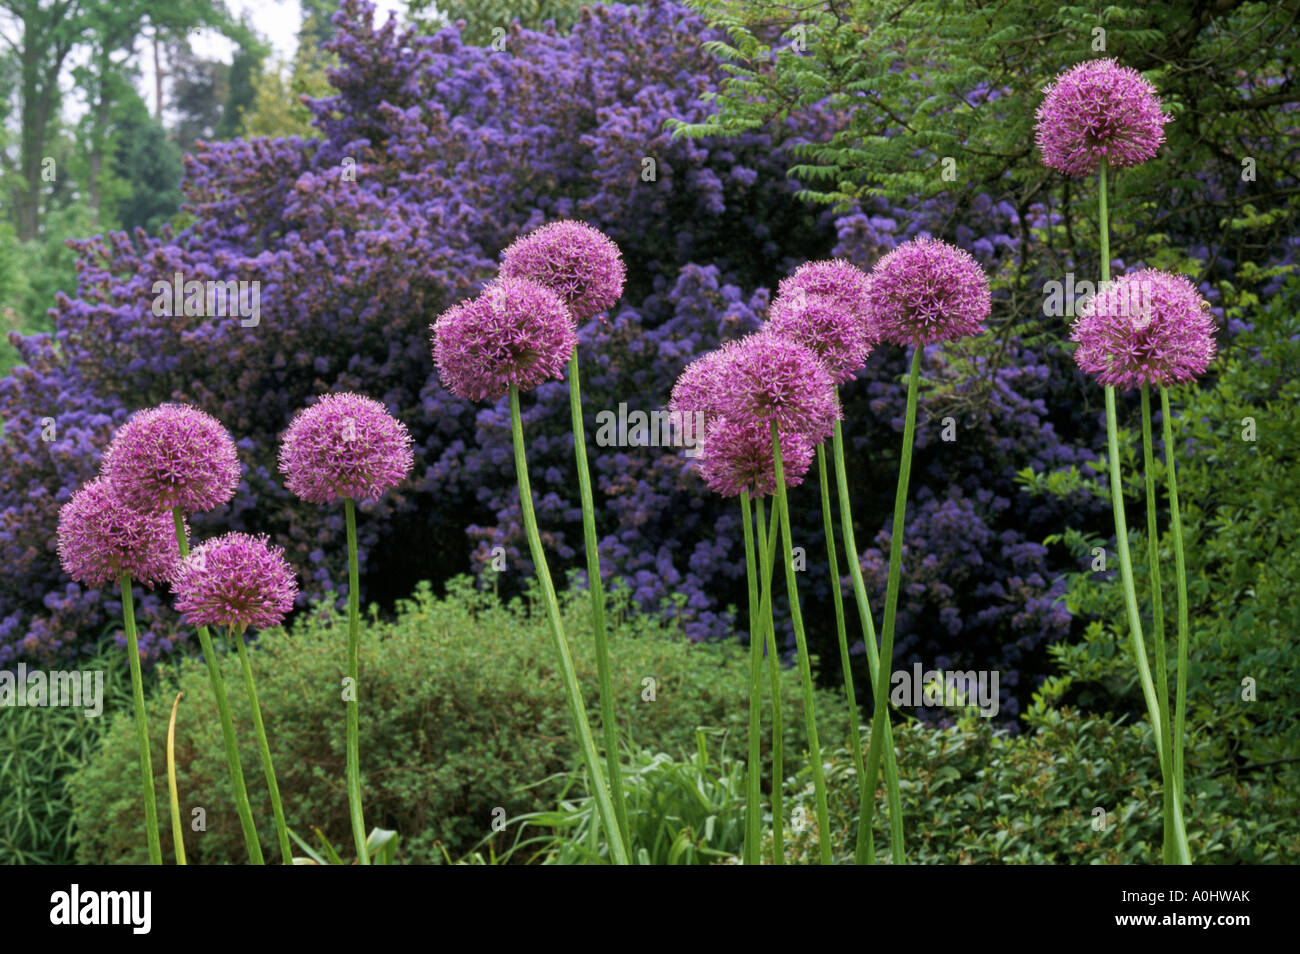 Hilliers Arboretum. Hampshire. Allium rosenbachianum. Stock Photo